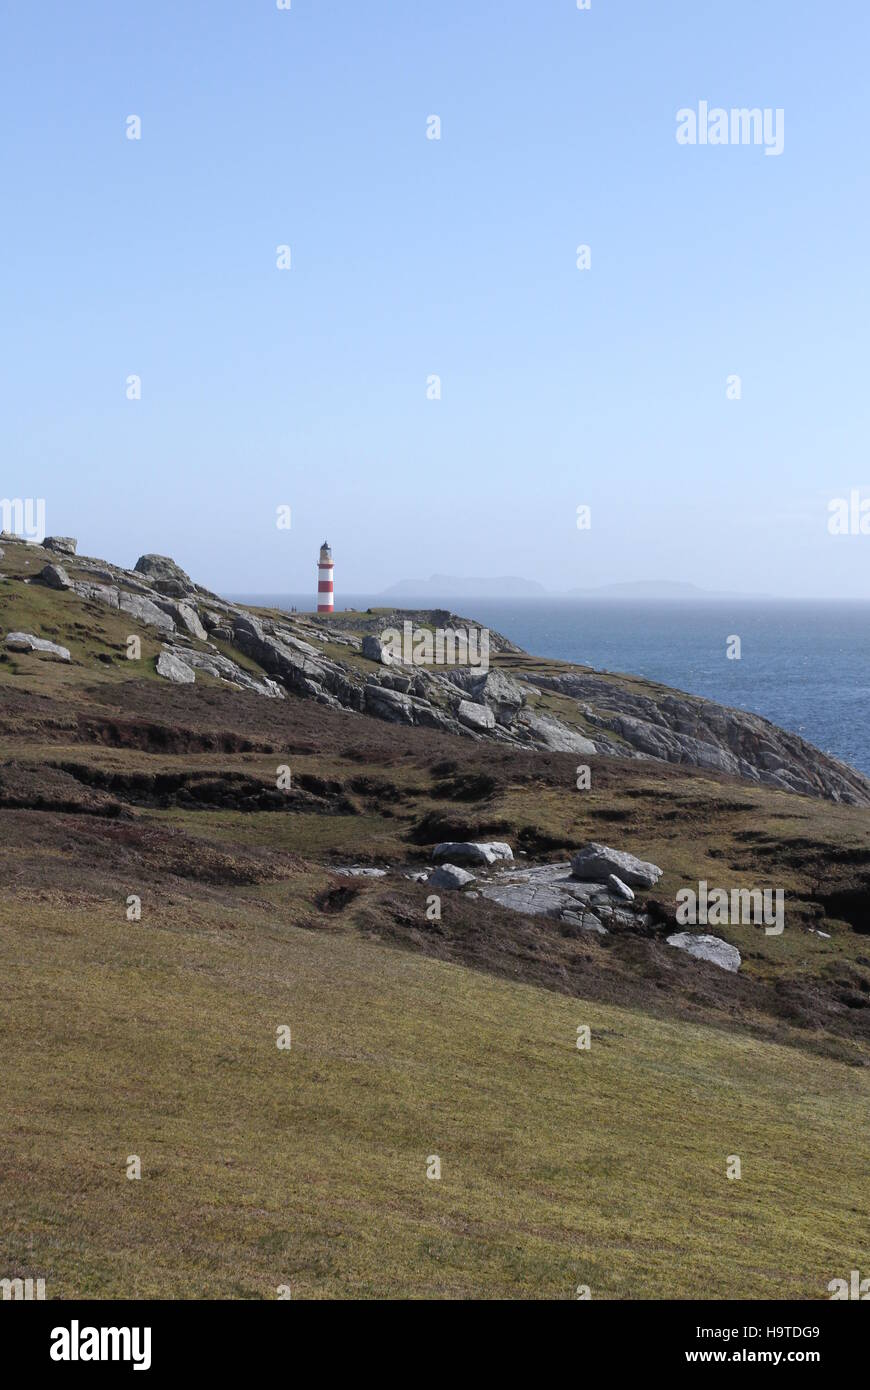 Eilean glas phare sur l'île de scalpay lointaines îles shiant avec ecosse mai 2014 Banque D'Images